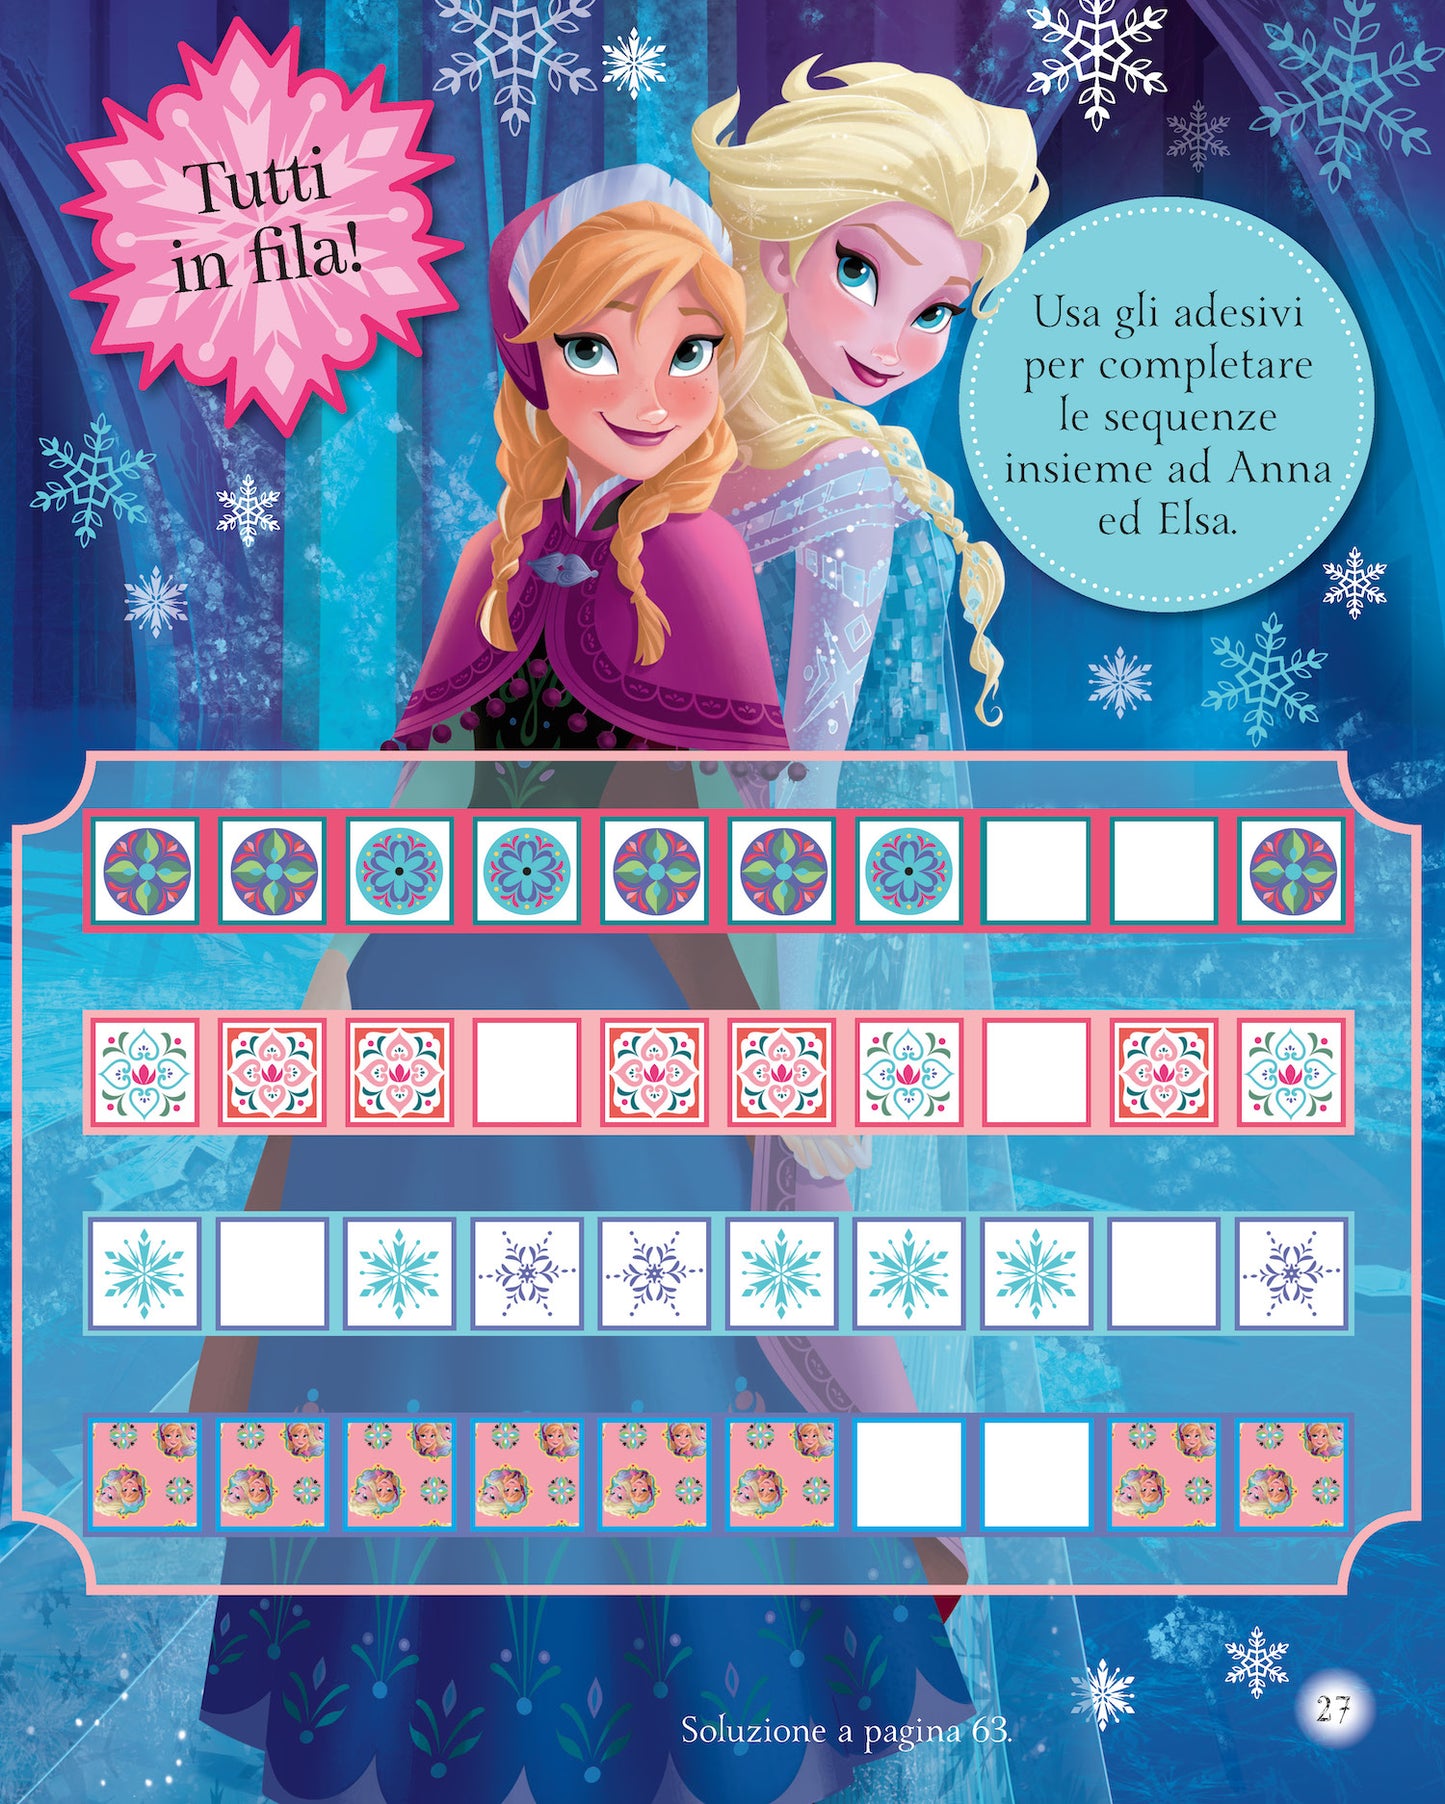 Frozen 1000 sticker::Tanti giochi e attività